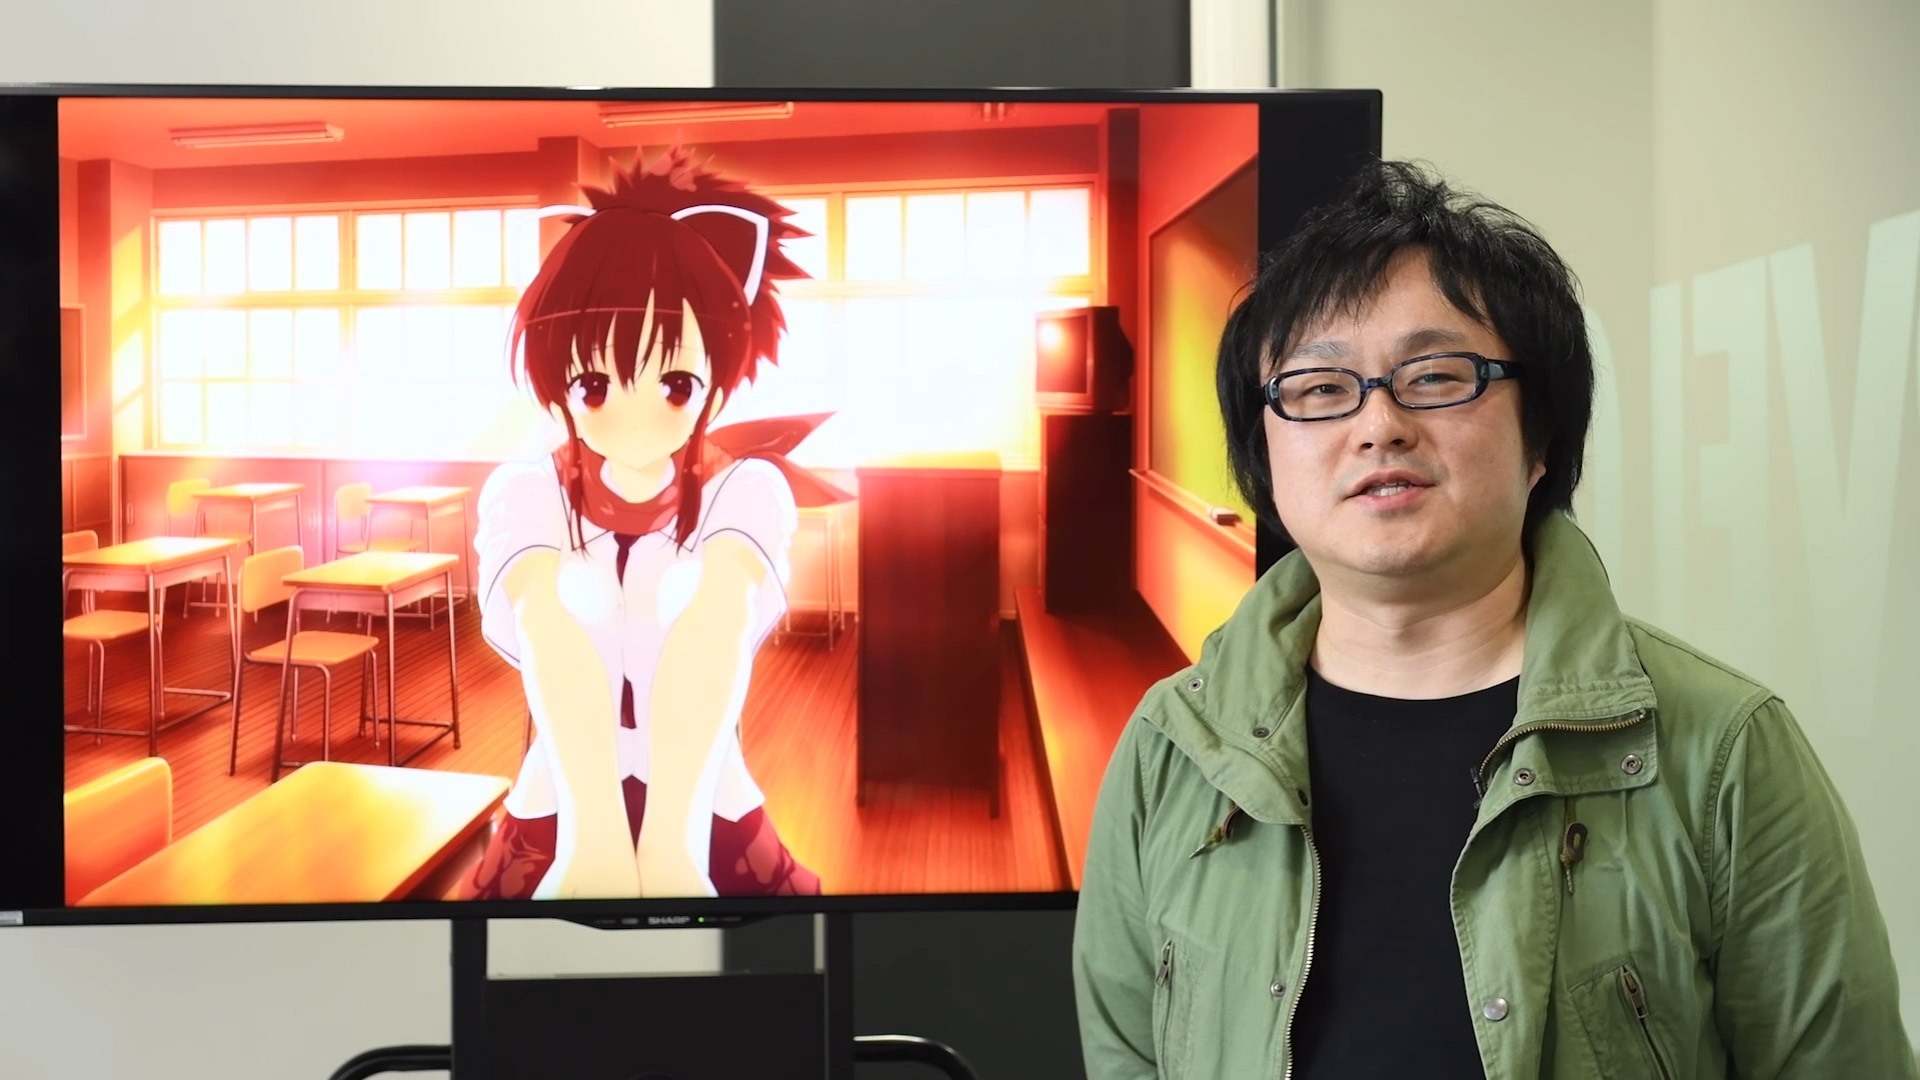 Senran Kagura 3DS eShop Review - Video Game Reviews, News, Streams and more  - myGamer